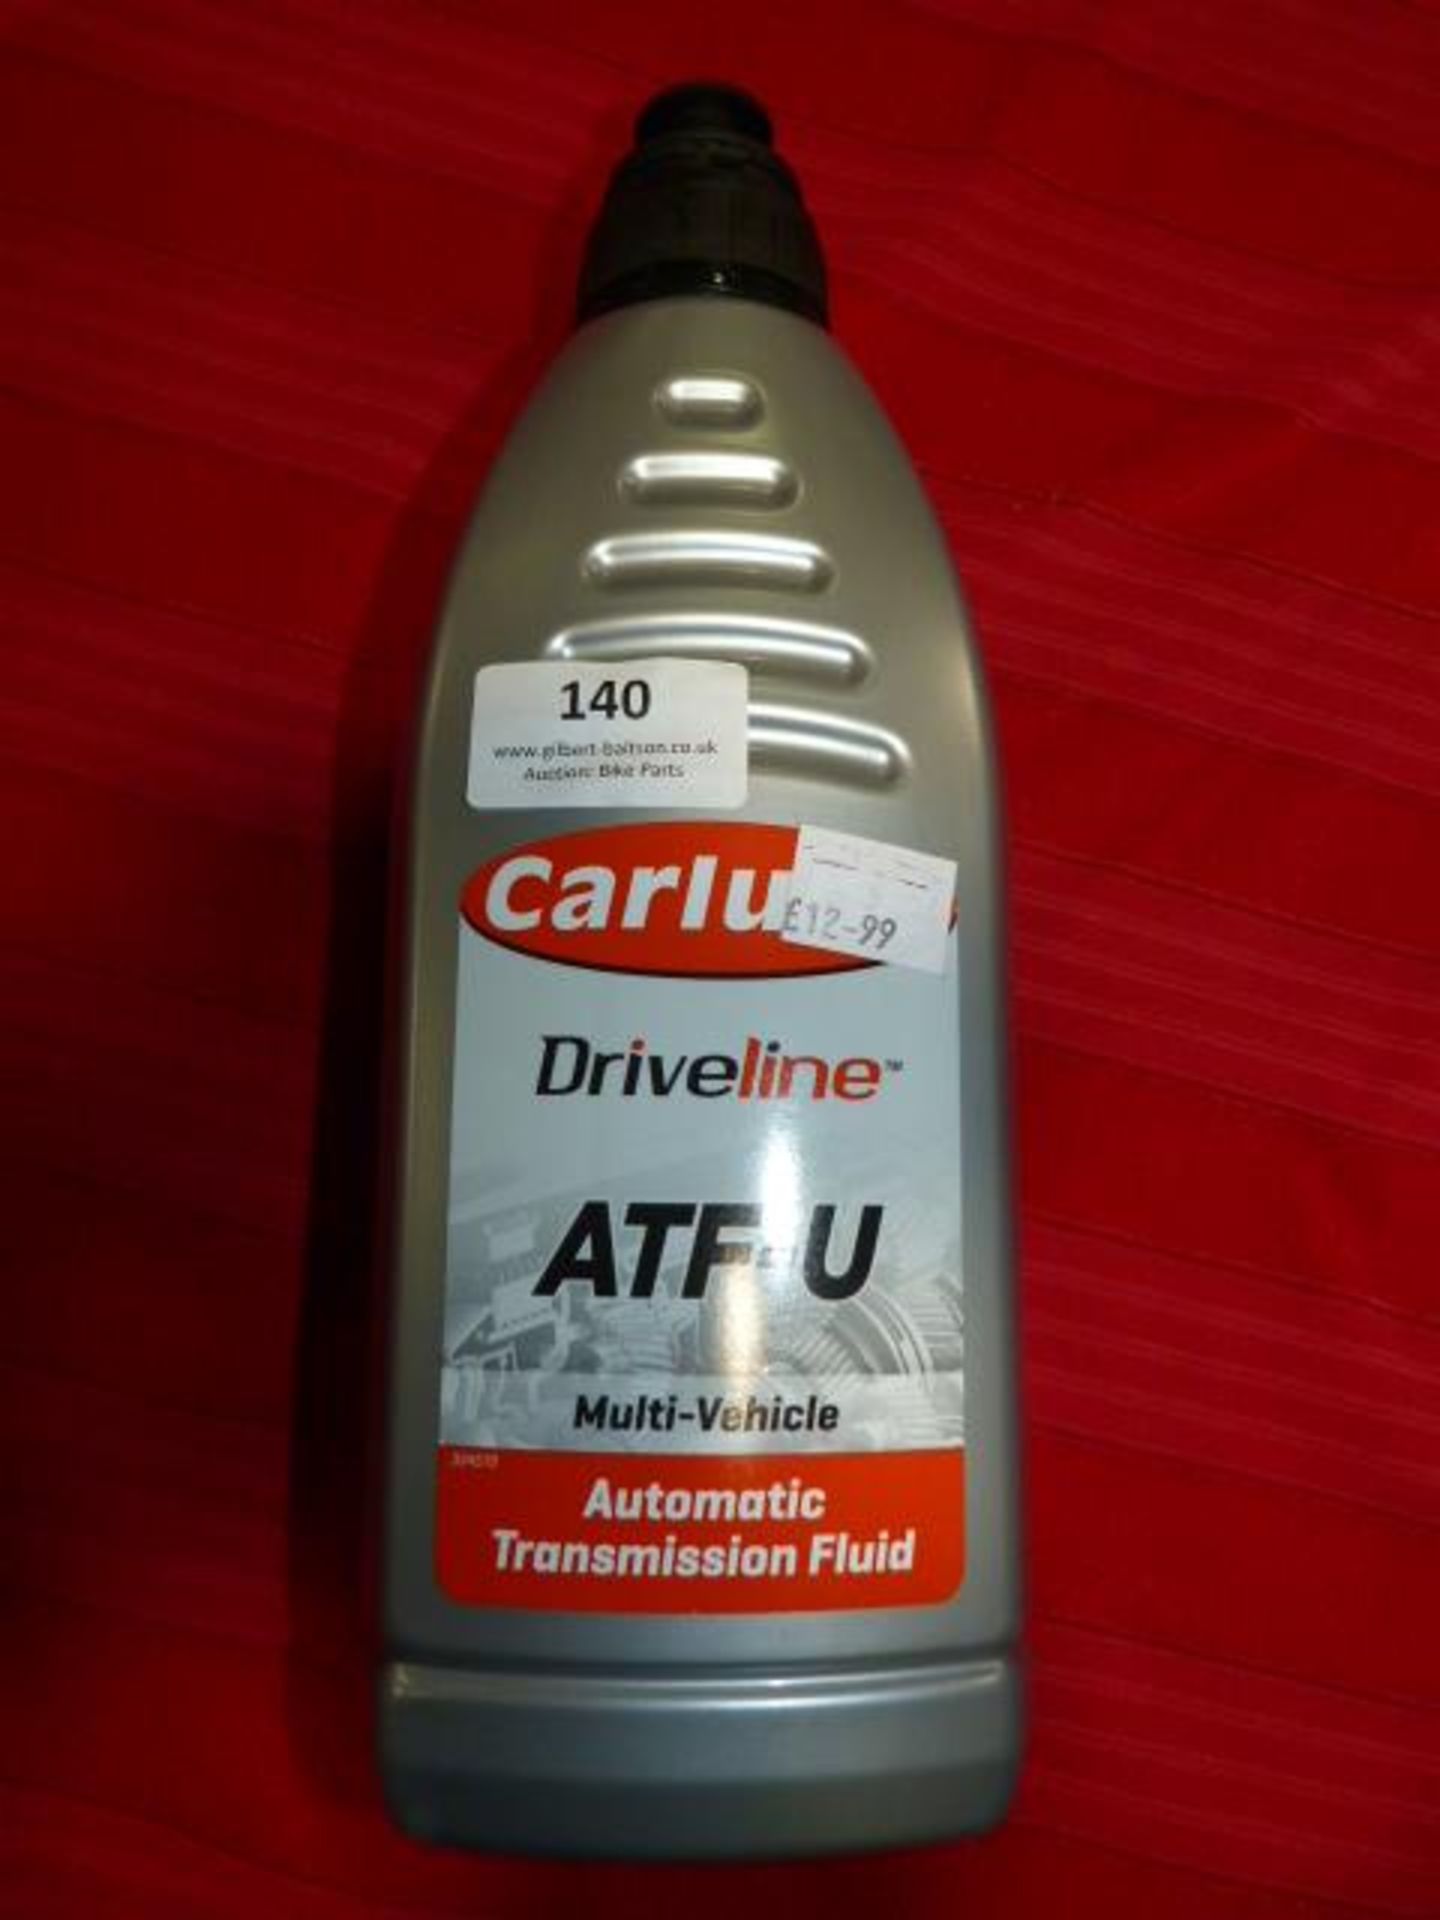 *1L Bottle of ATF-U Transmission Fluid